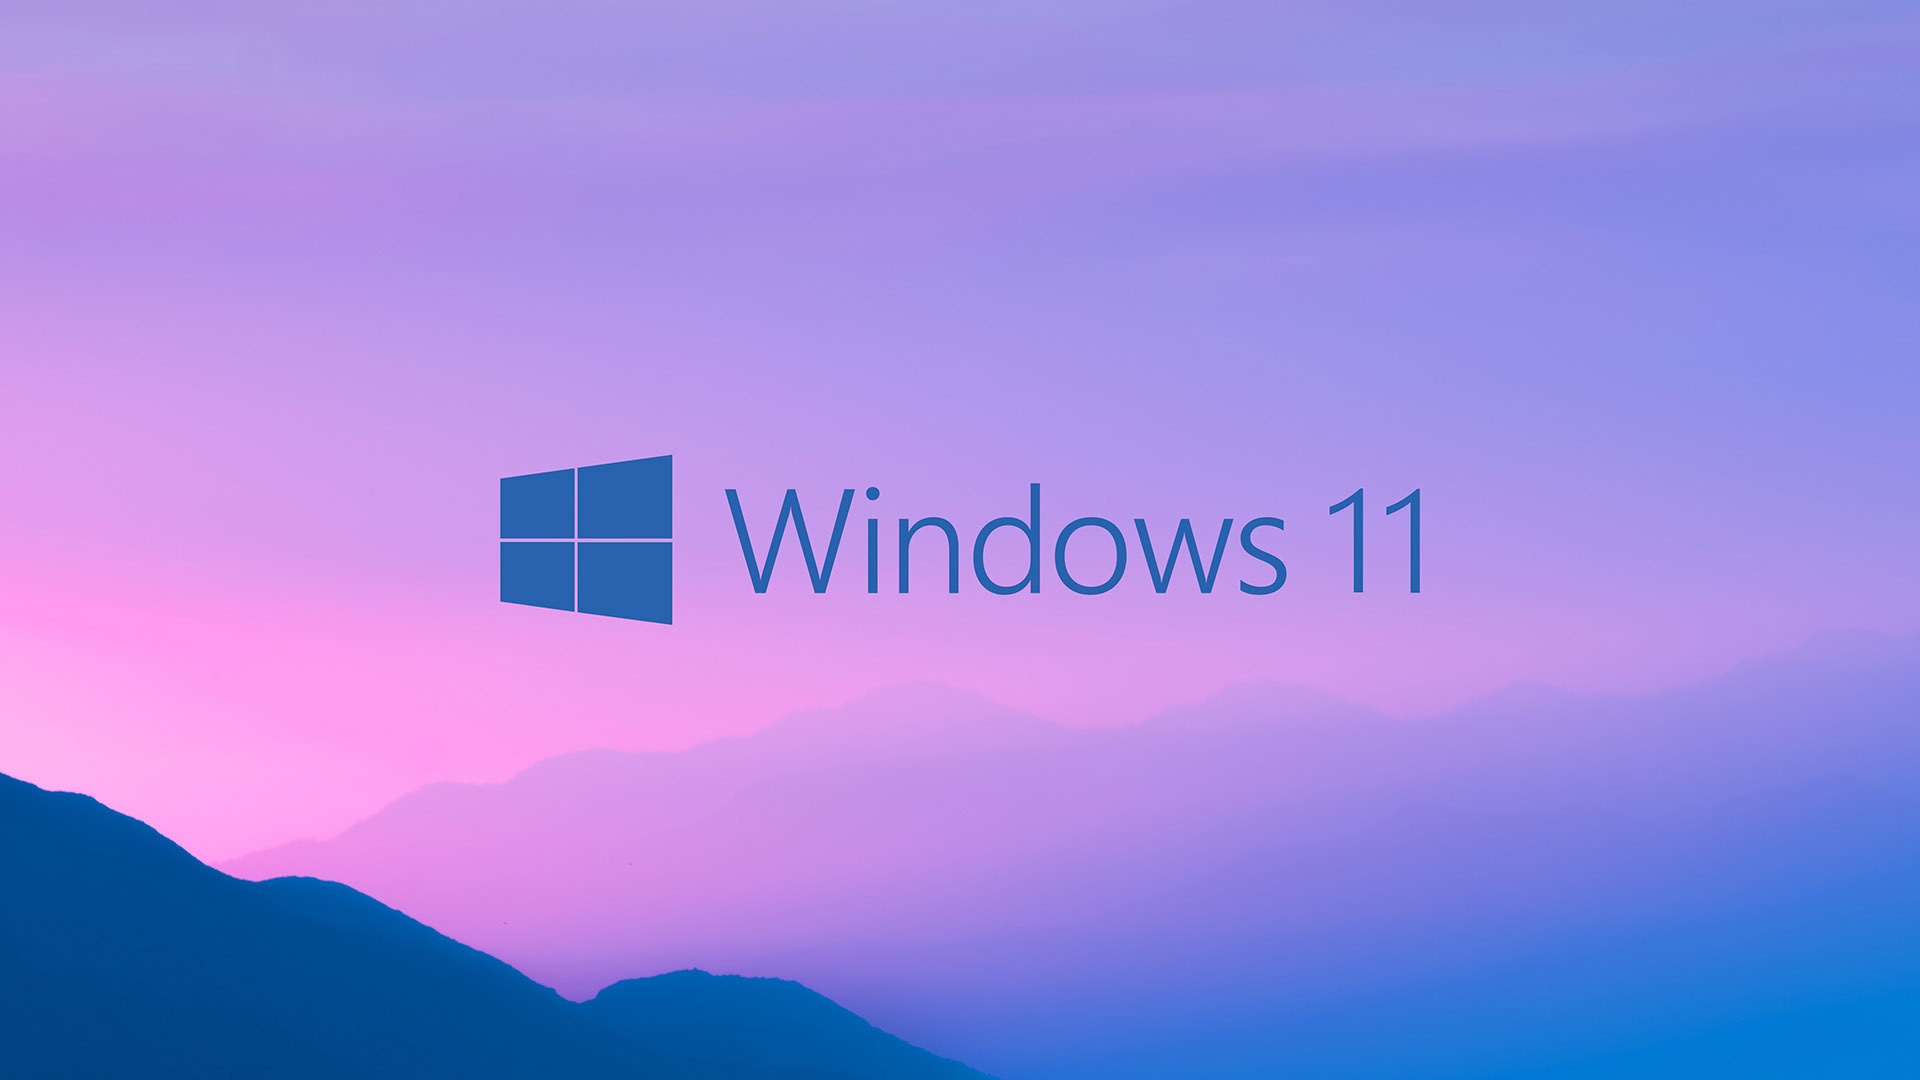 Исследование: Windows 11 заняла на рынке долю в 23%